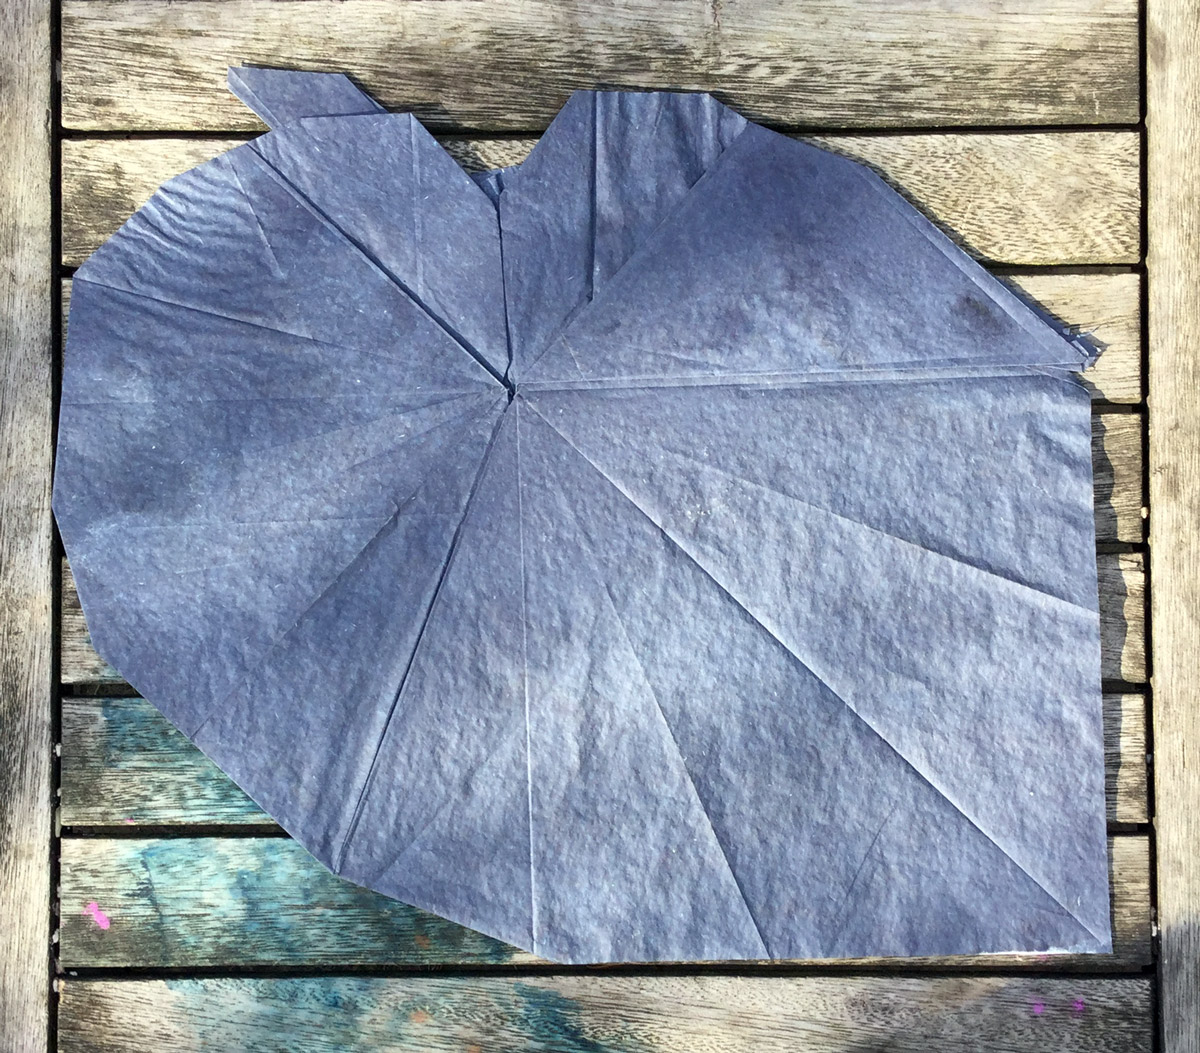 begonia leaf